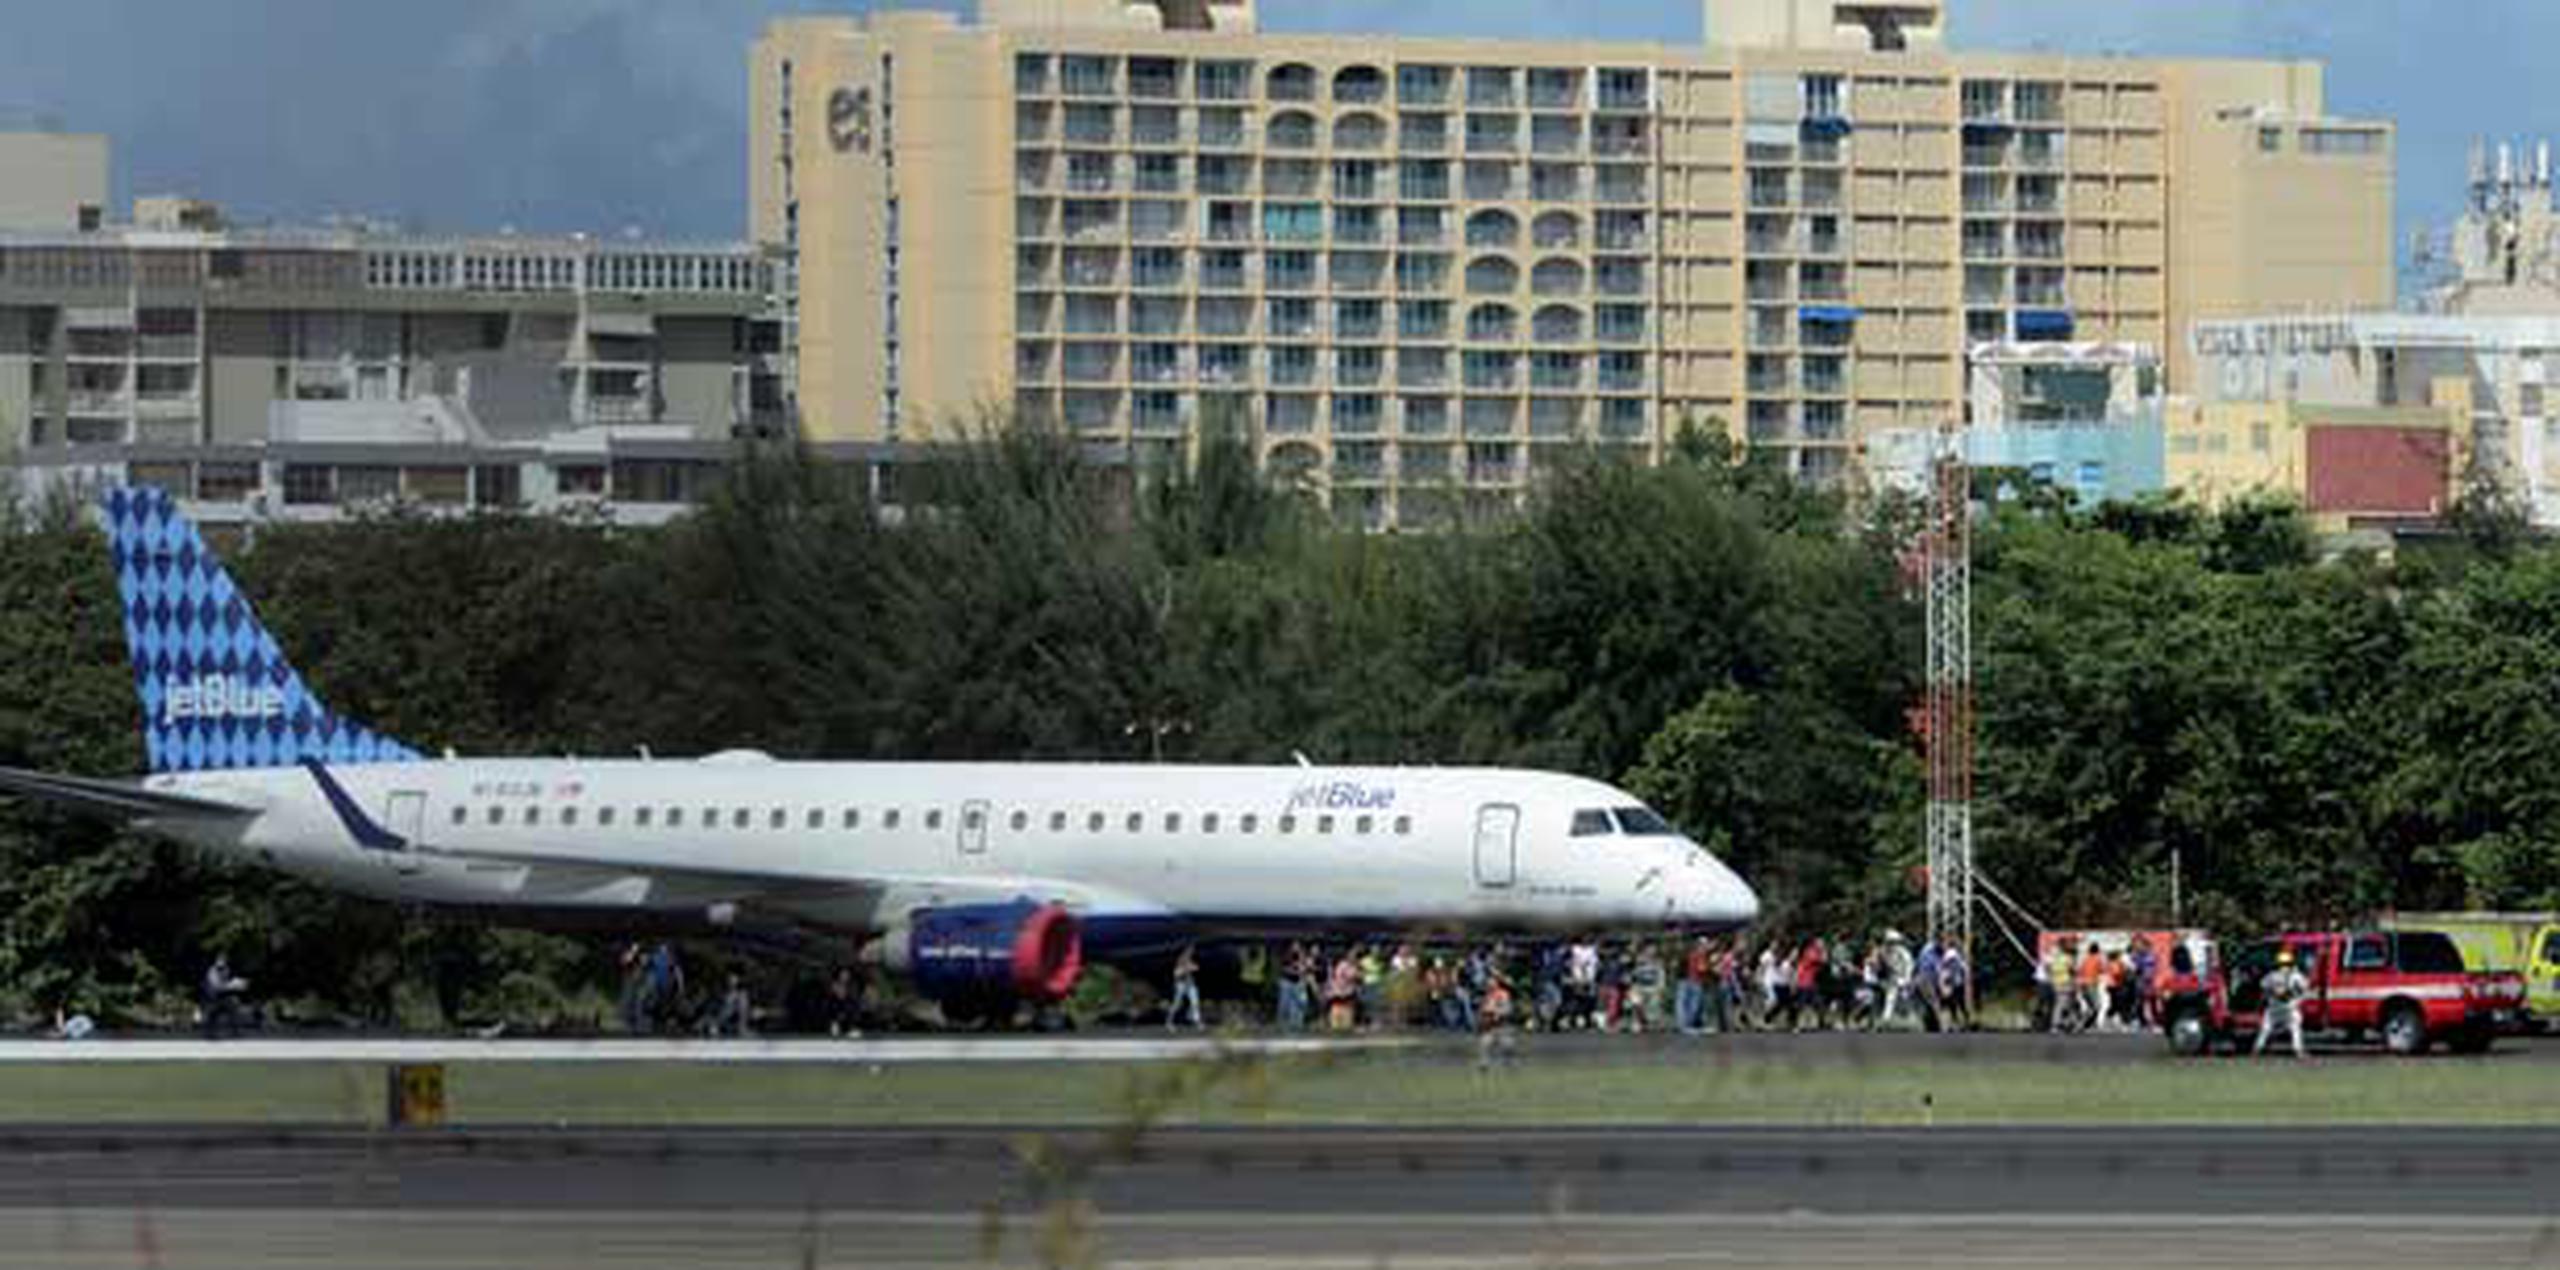 El simulacro consistió de un avión que viajaba desde Santo Domingo hacia San Juan y avisó que  tenía una falla, por lo que se anticipaba que tendría un aterrizaje de emergencia. (carlos.giustisti@gfrmedia.com)